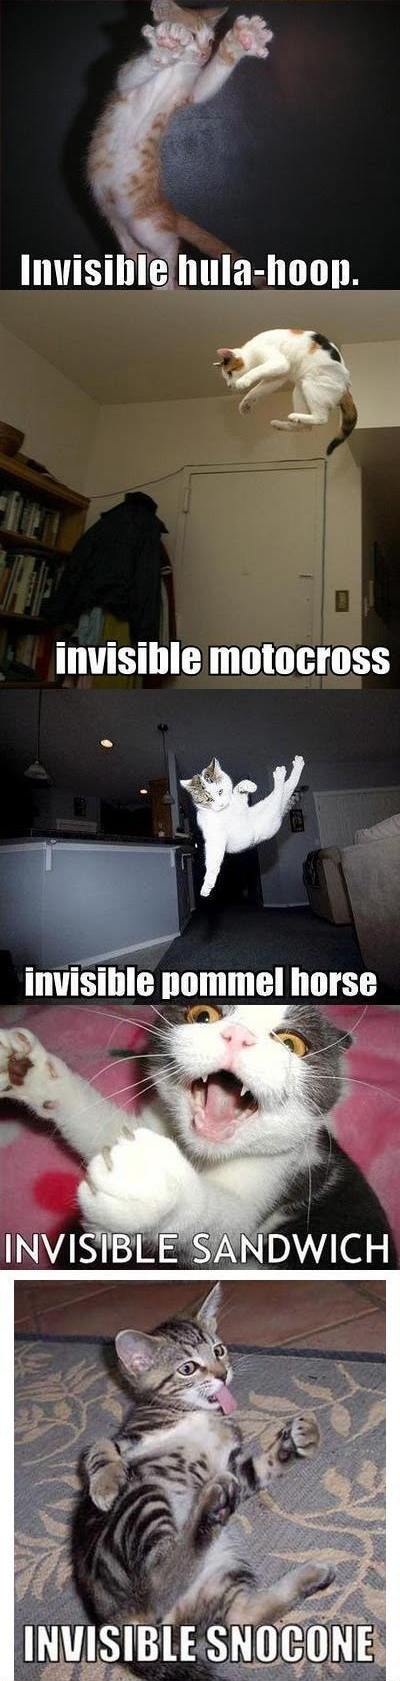 Obrázek invisible cat 3